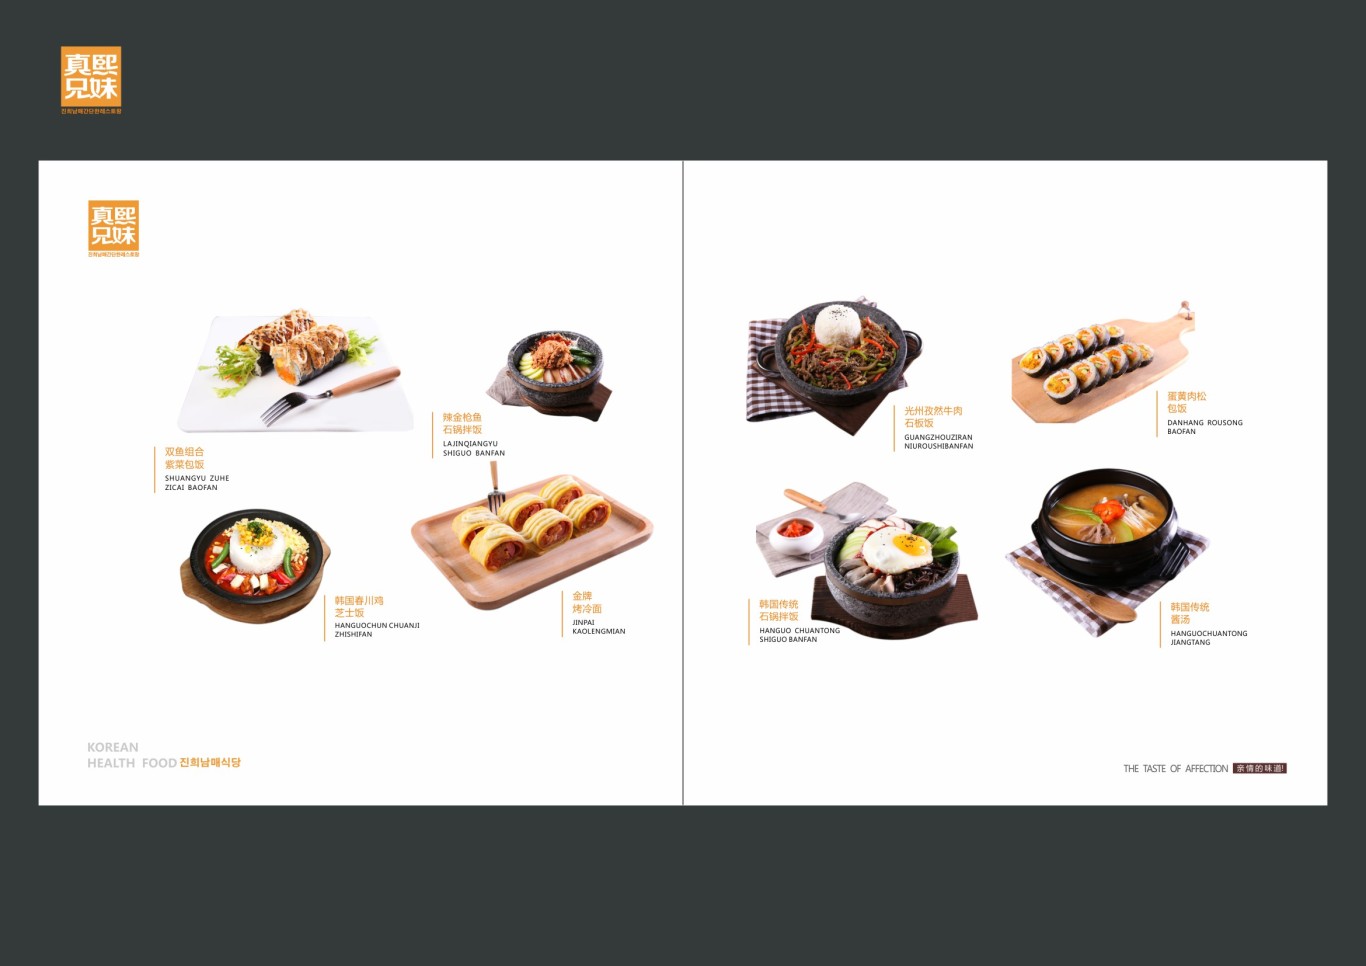 韩式简餐连锁品牌设计图73